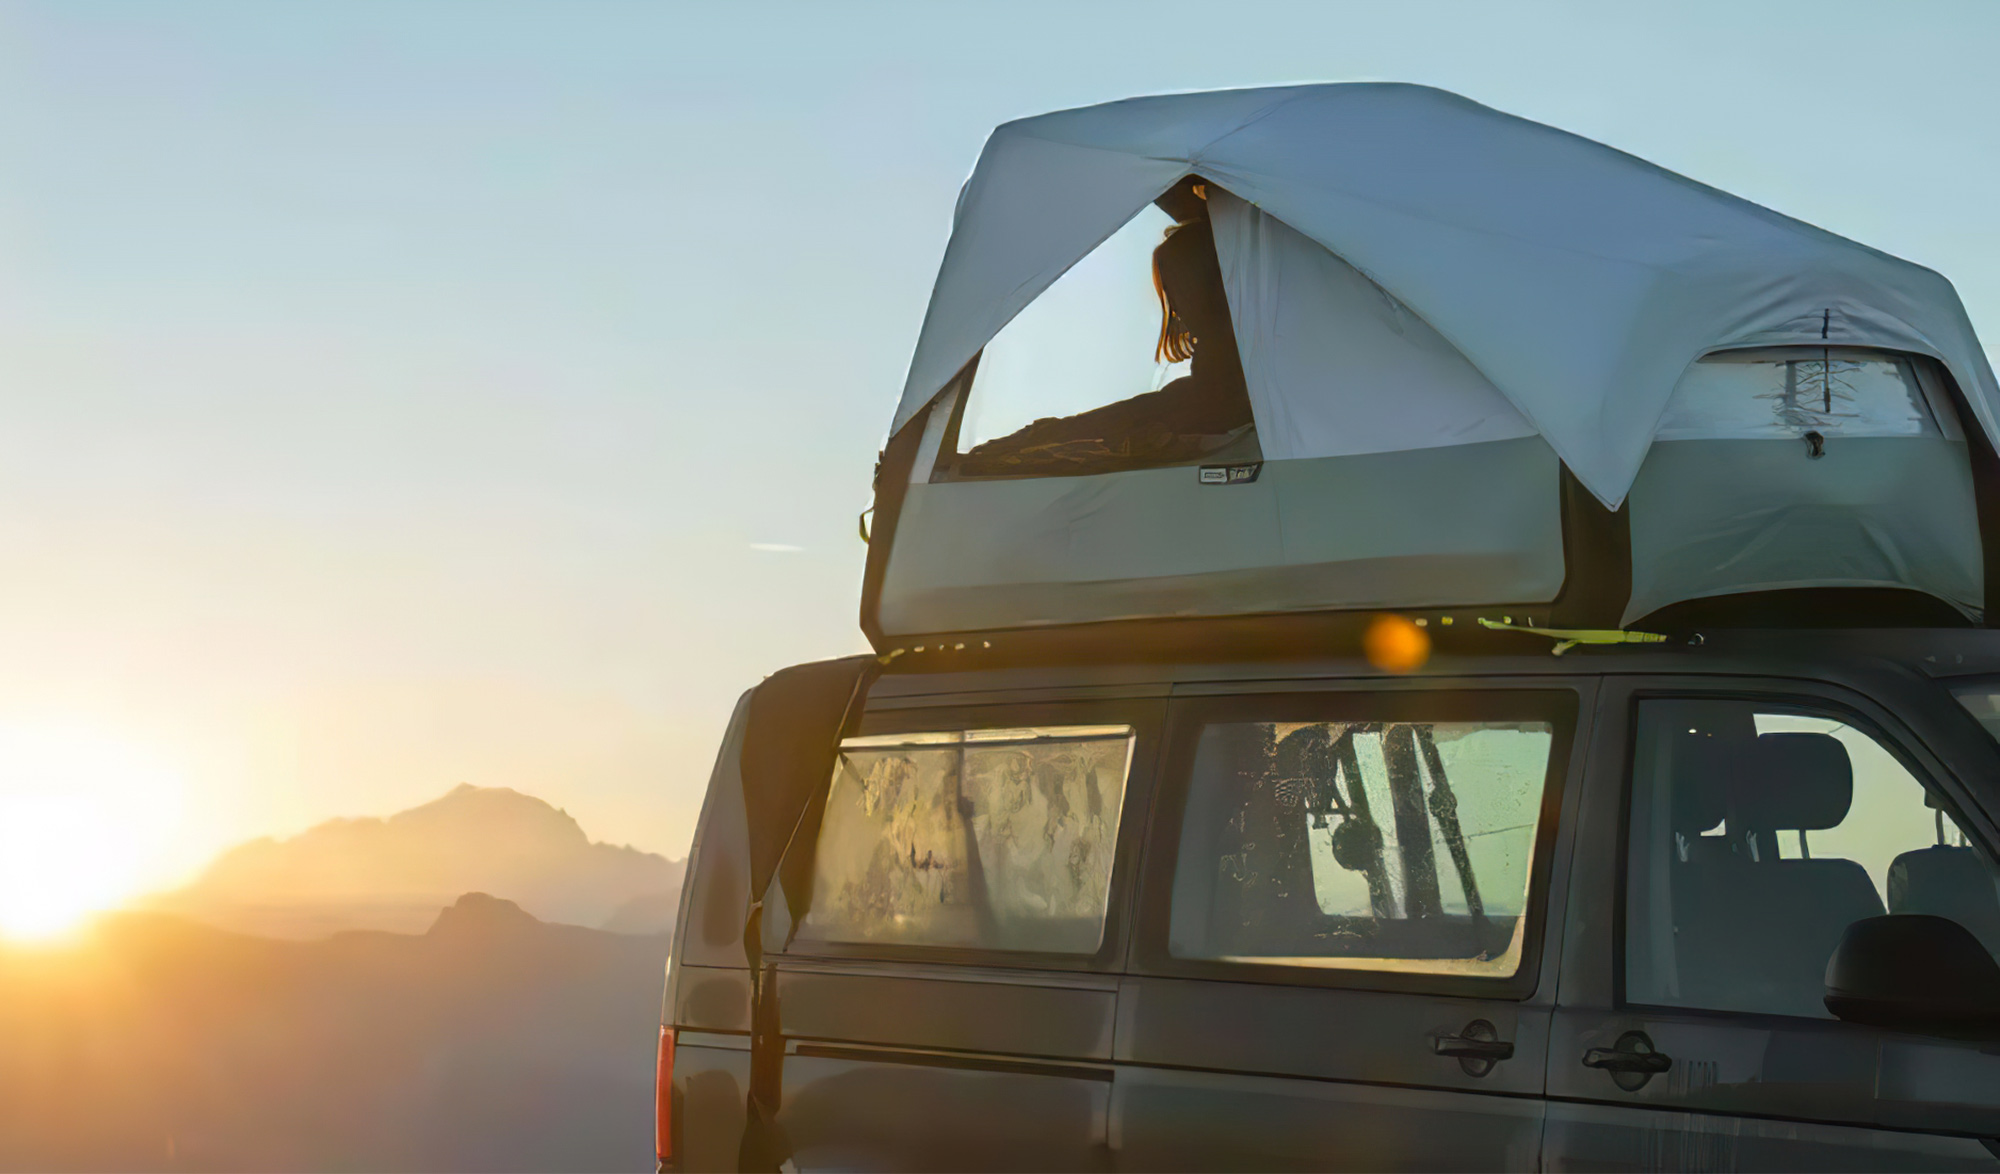 Décathlon lance une tente de toit gonflable pour van, qu'en penser ?